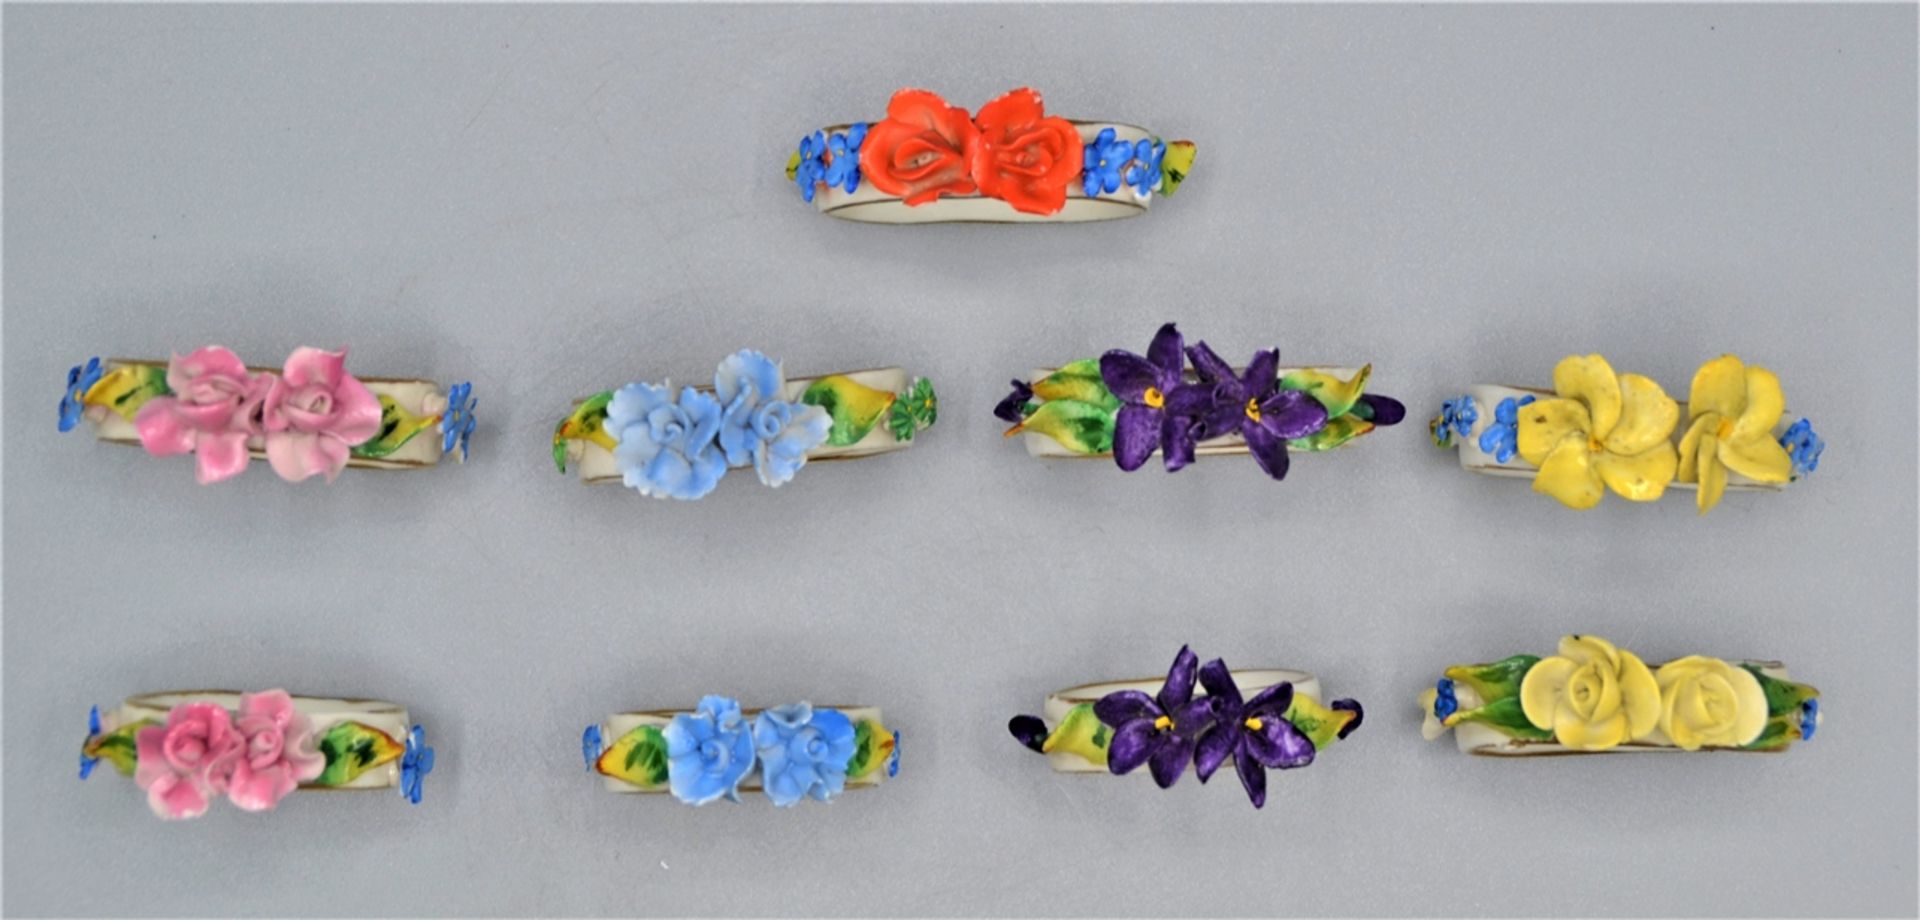 Porzellan Serviettenringe mit feinen modellierten Blüten, 9 Stück, handbemalt, kleine Beschädigunge - Image 4 of 4